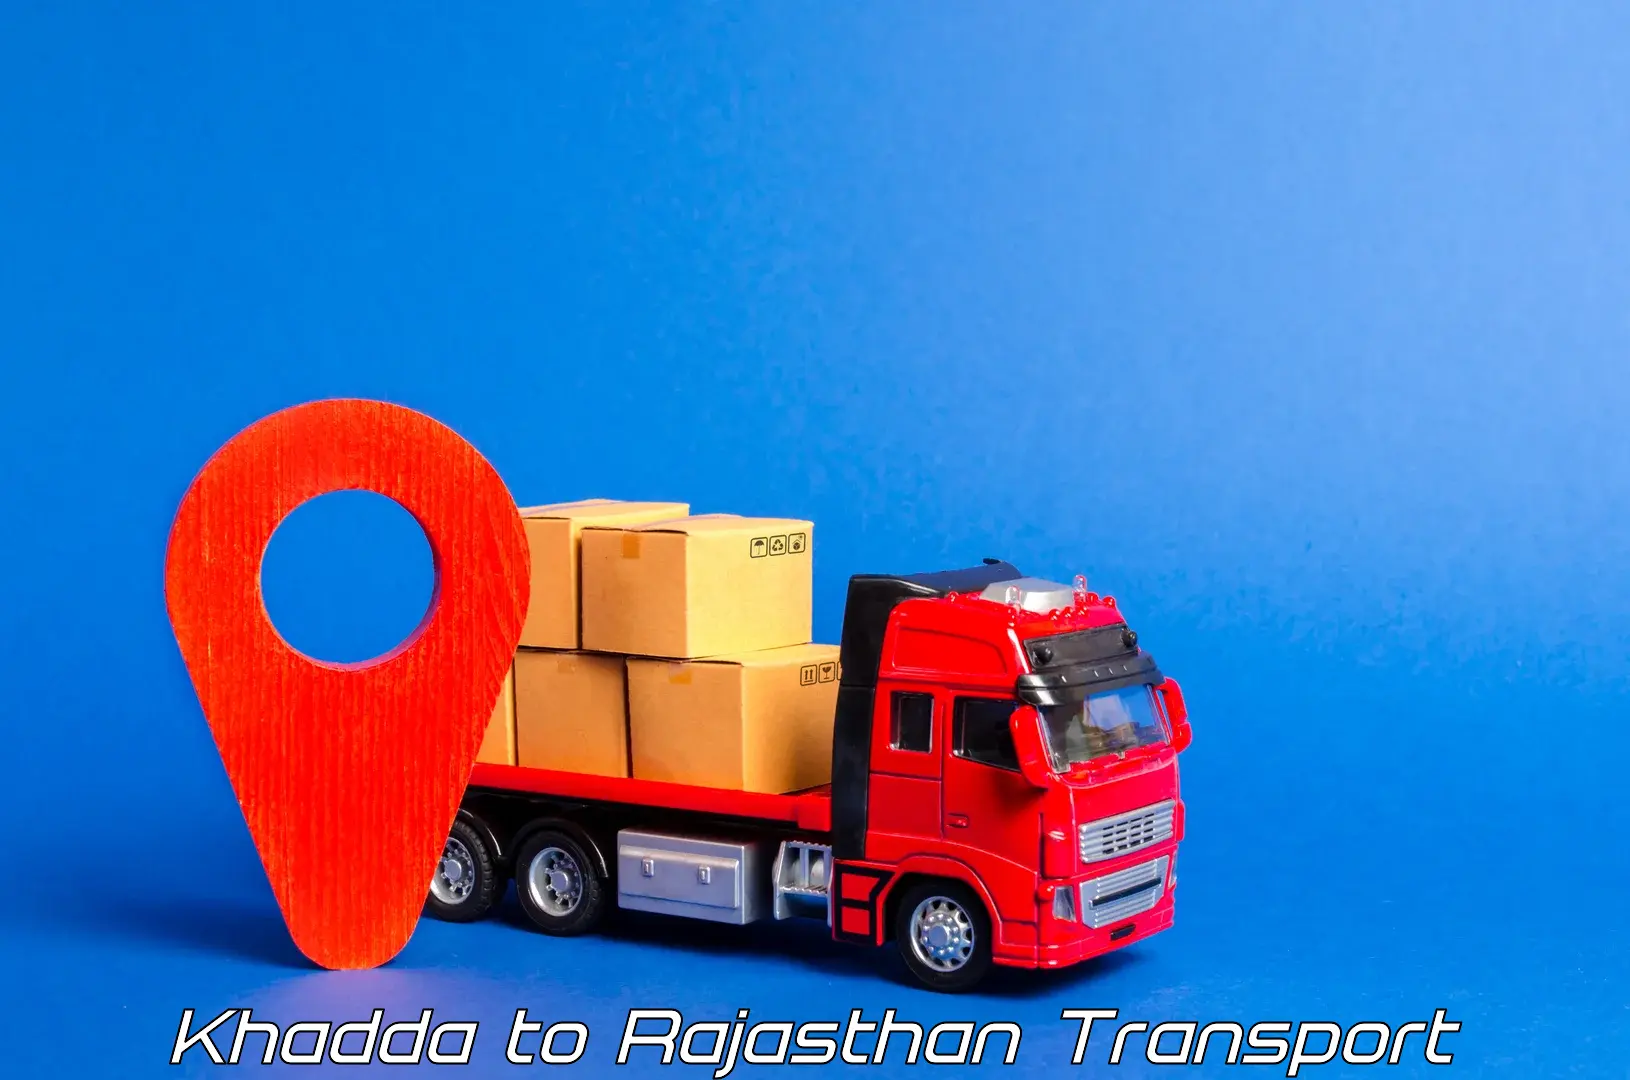 Transportation solution services Khadda to Sardarshahr